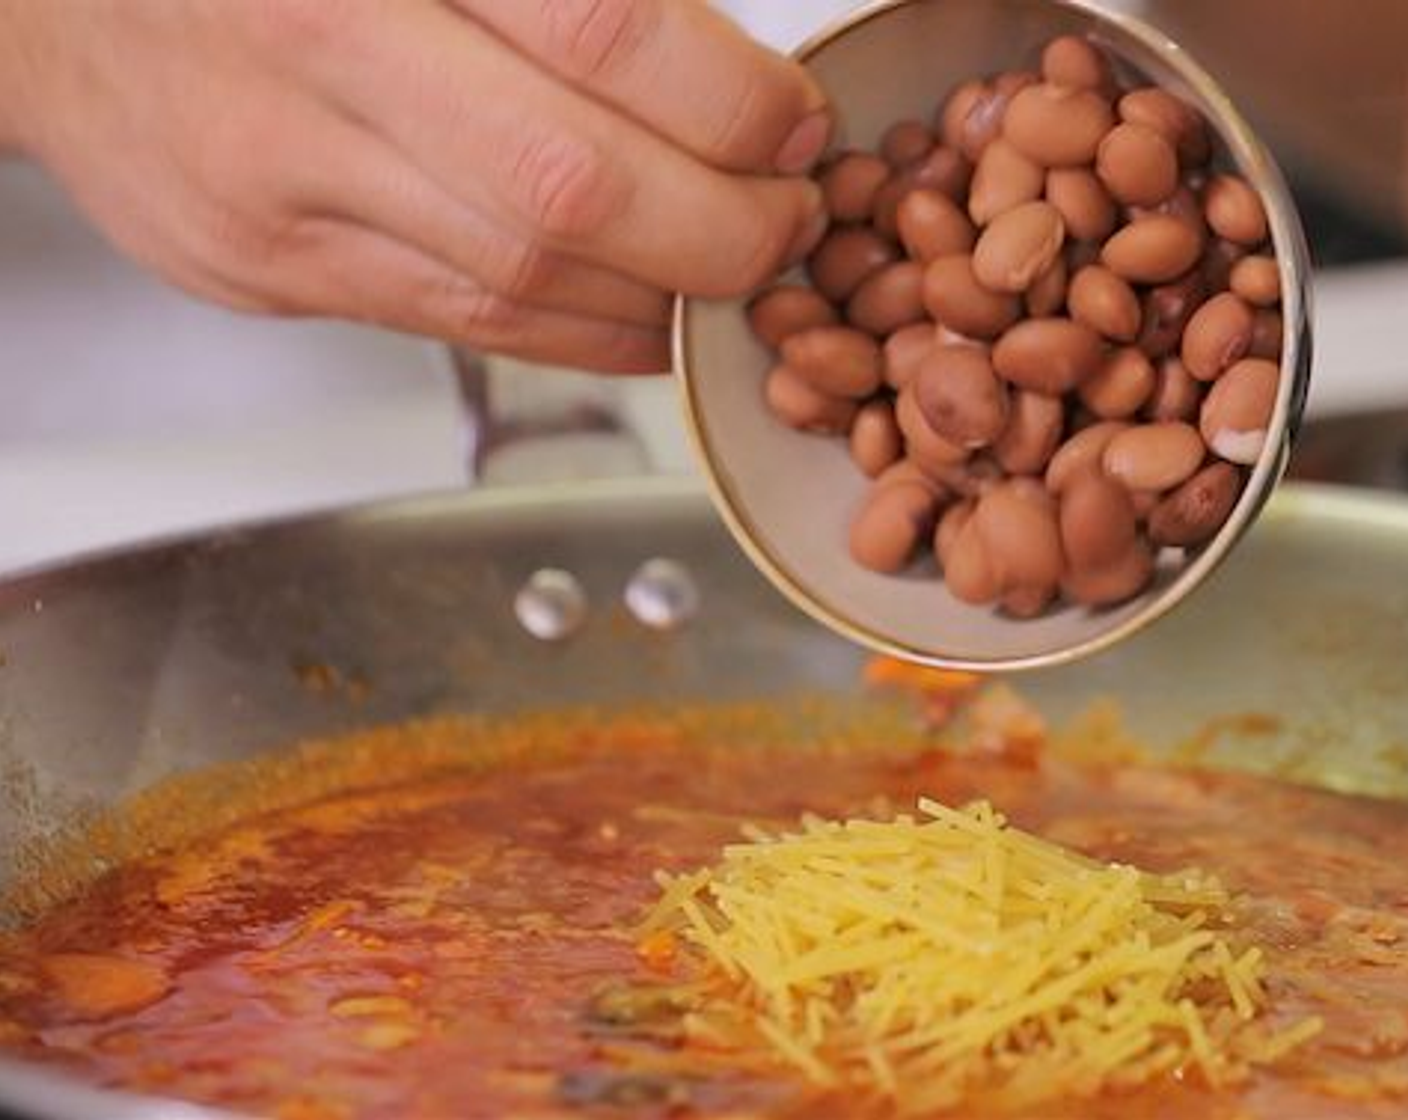 Schritt 5 In der Zwischenzeit, die Spaghetti (80 g) brechen und zusammen mit der Zucchini und den Borlotti-Bohnen (100 g) in den Wok geben. Die Suppe nochmals aufkochen lassen und danach die Hitze reduzieren. Das Ganze simmern lassen, bis die Spaghetti al dente sind. Den Bund Petersilie zum Schluss entfernen.